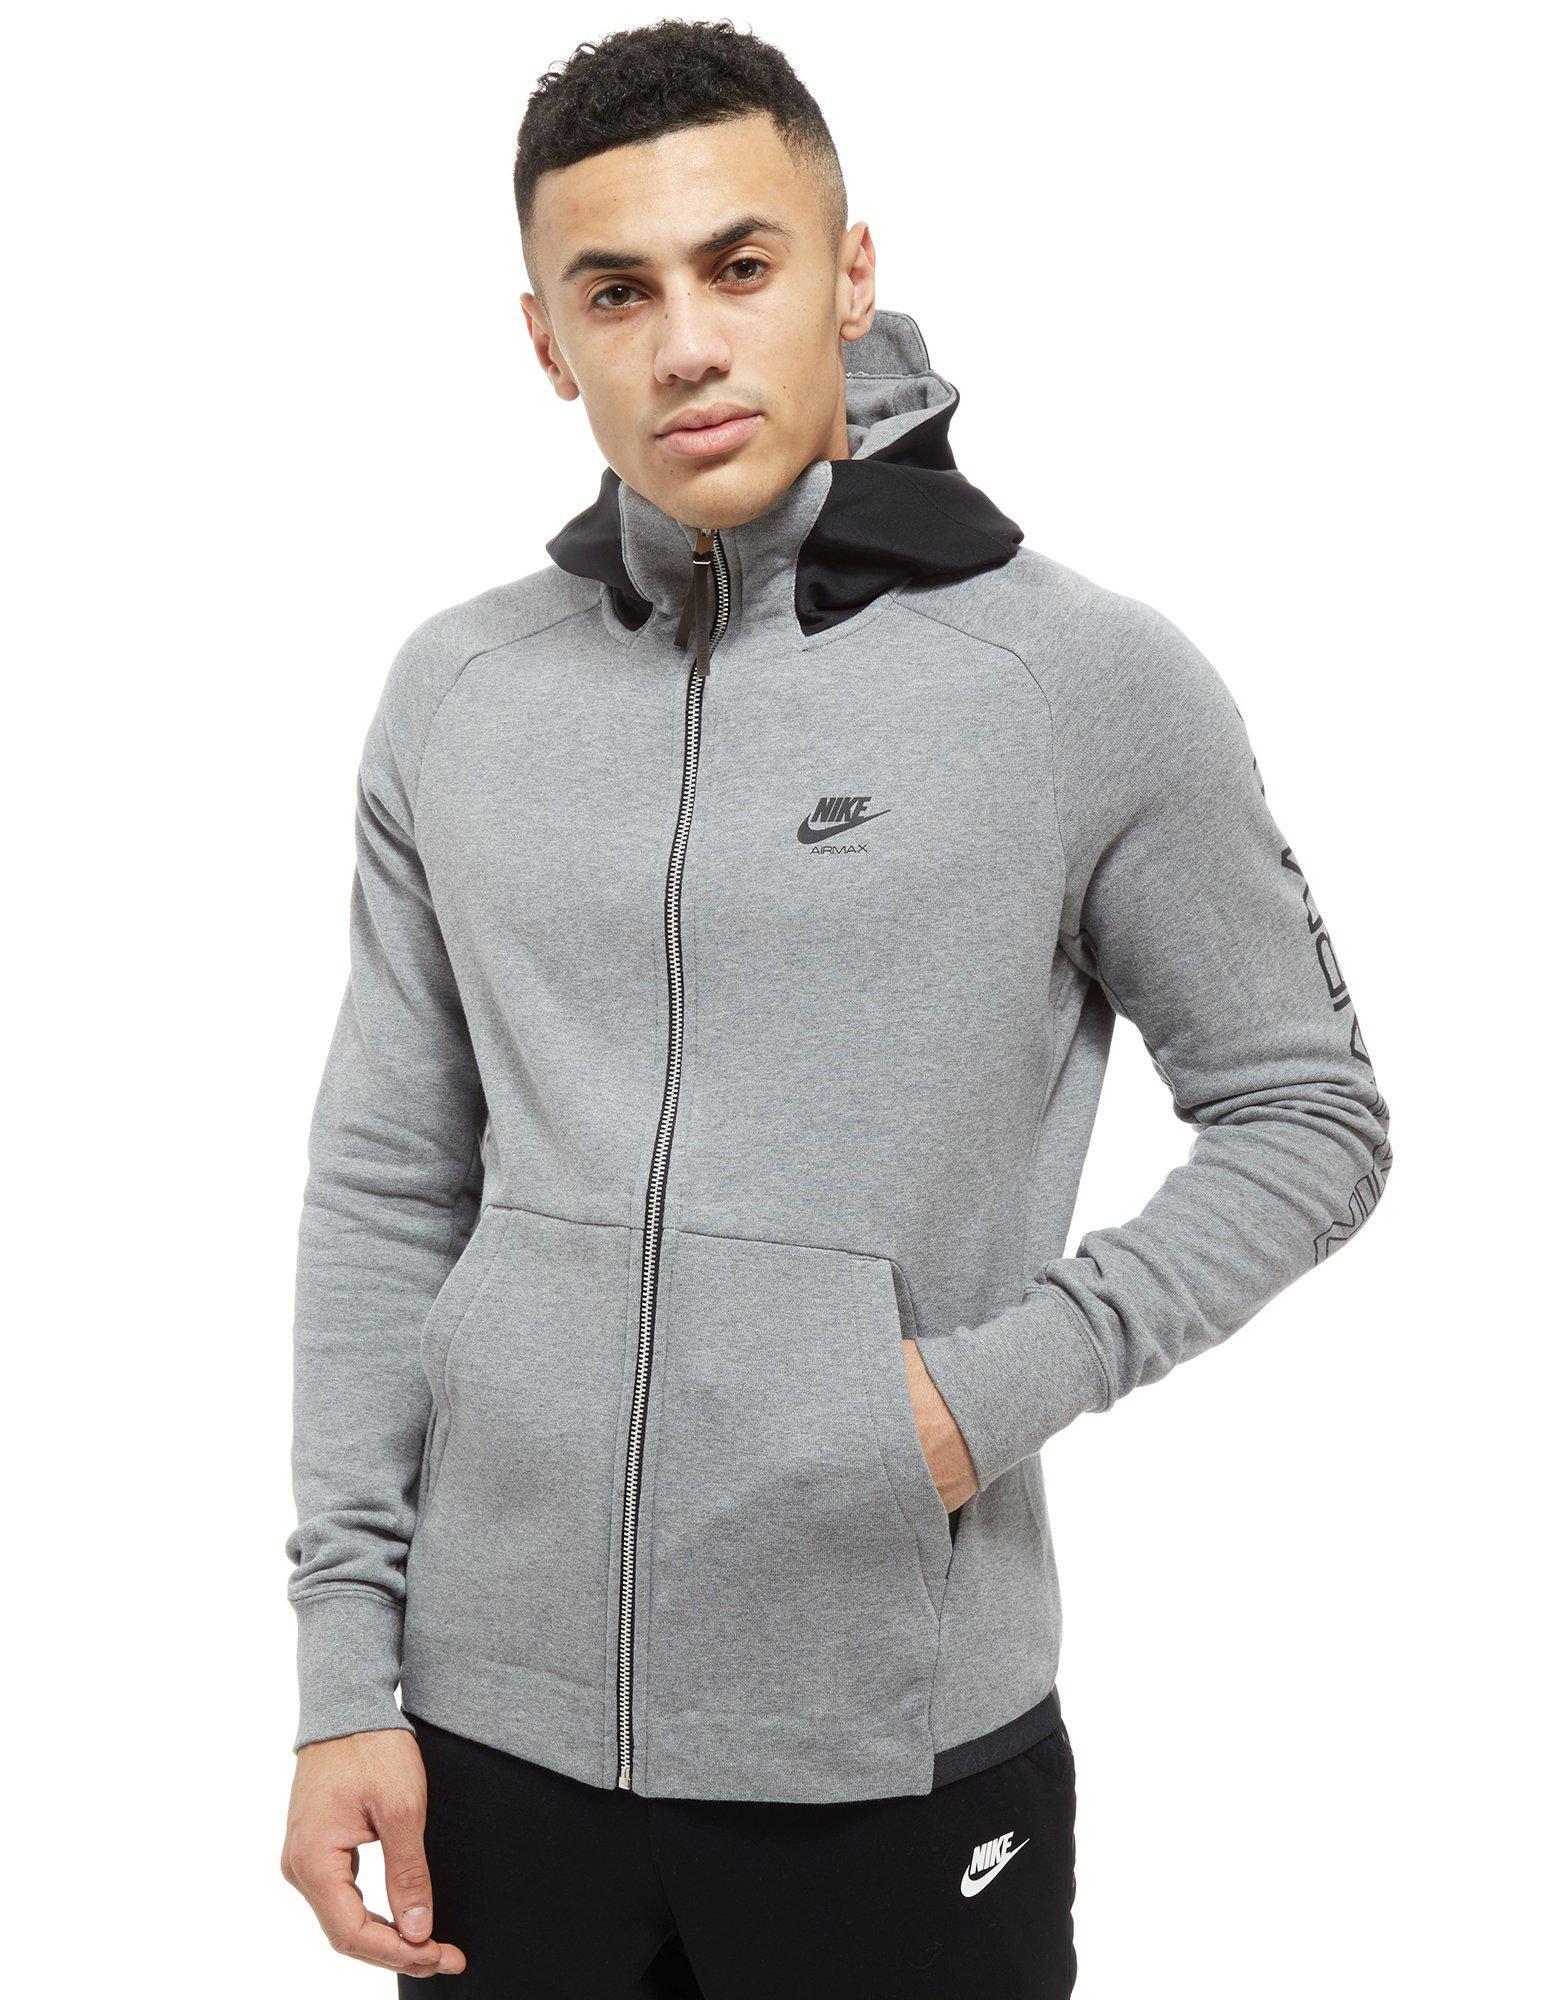 Nike Synthetic Air Max Full Zip Hoodie in Grey/Black (Gray) for Men - Lyst